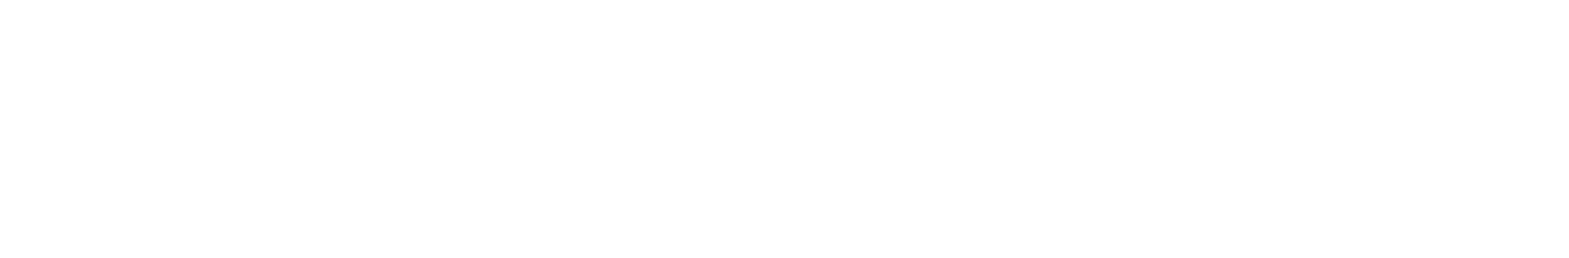 Boliden logo large for dark backgrounds (transparent PNG)